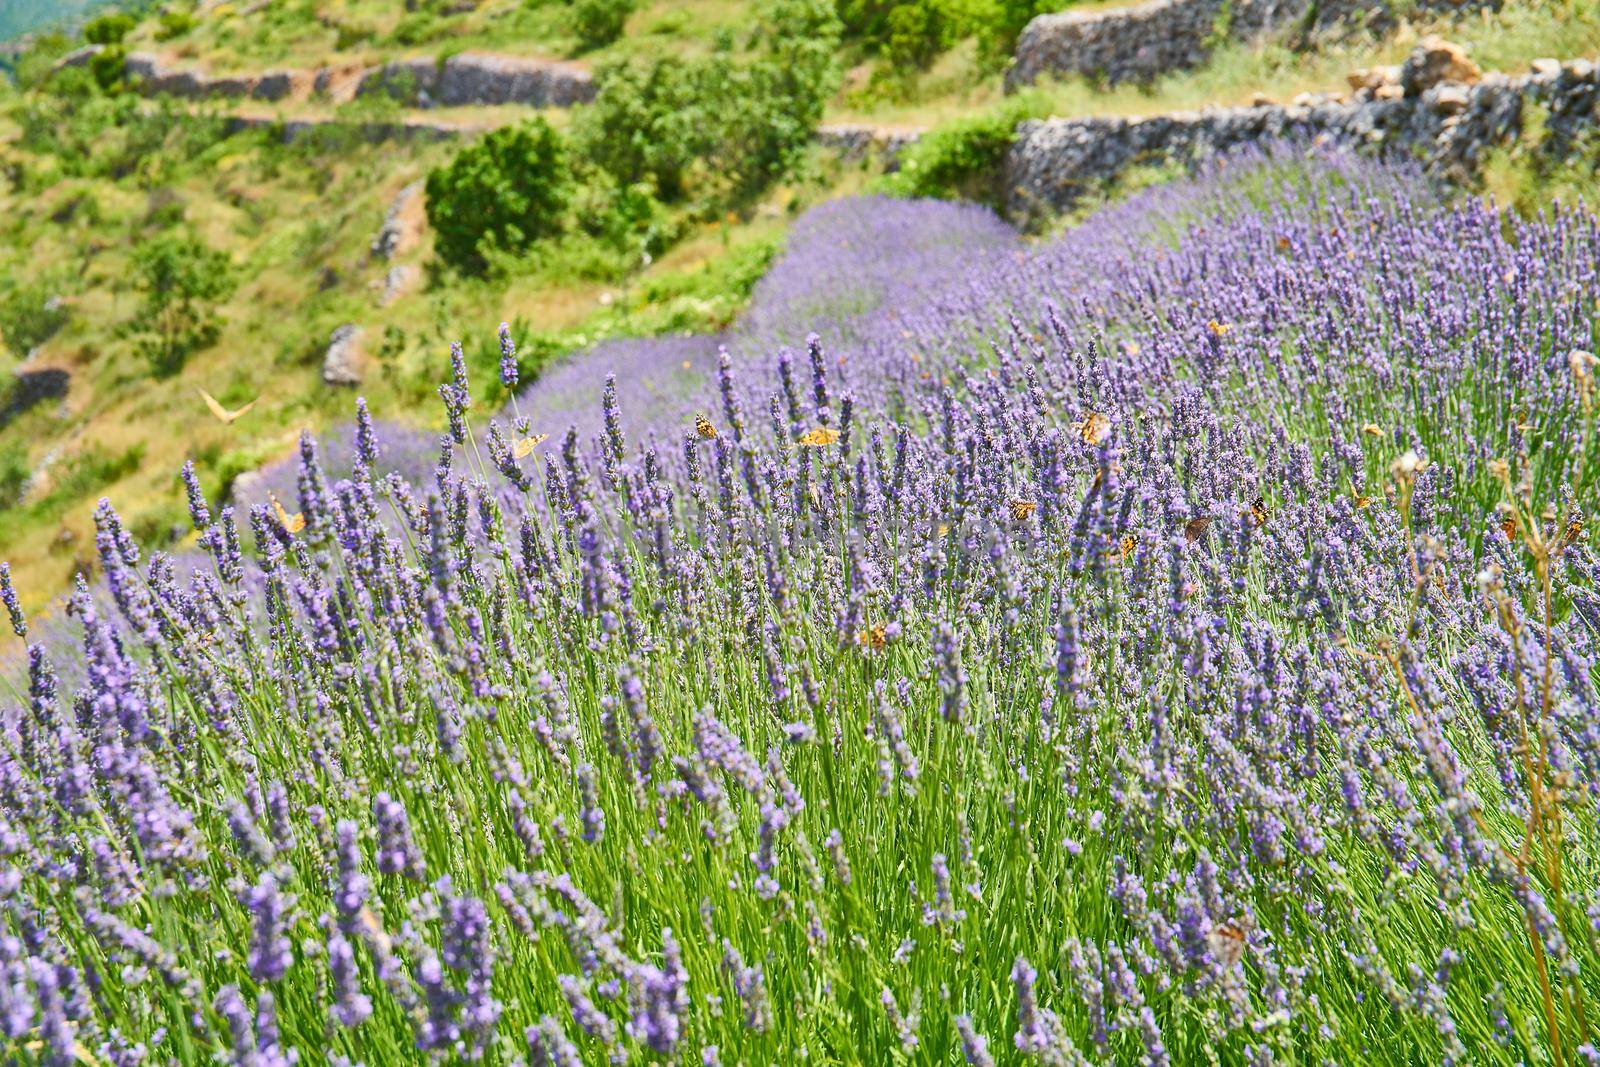 Wild lavender fields near Brusje on Hvar Island in Croatia
Lavender fields on Hvar, Croatia; purple colour, butterflies, rural